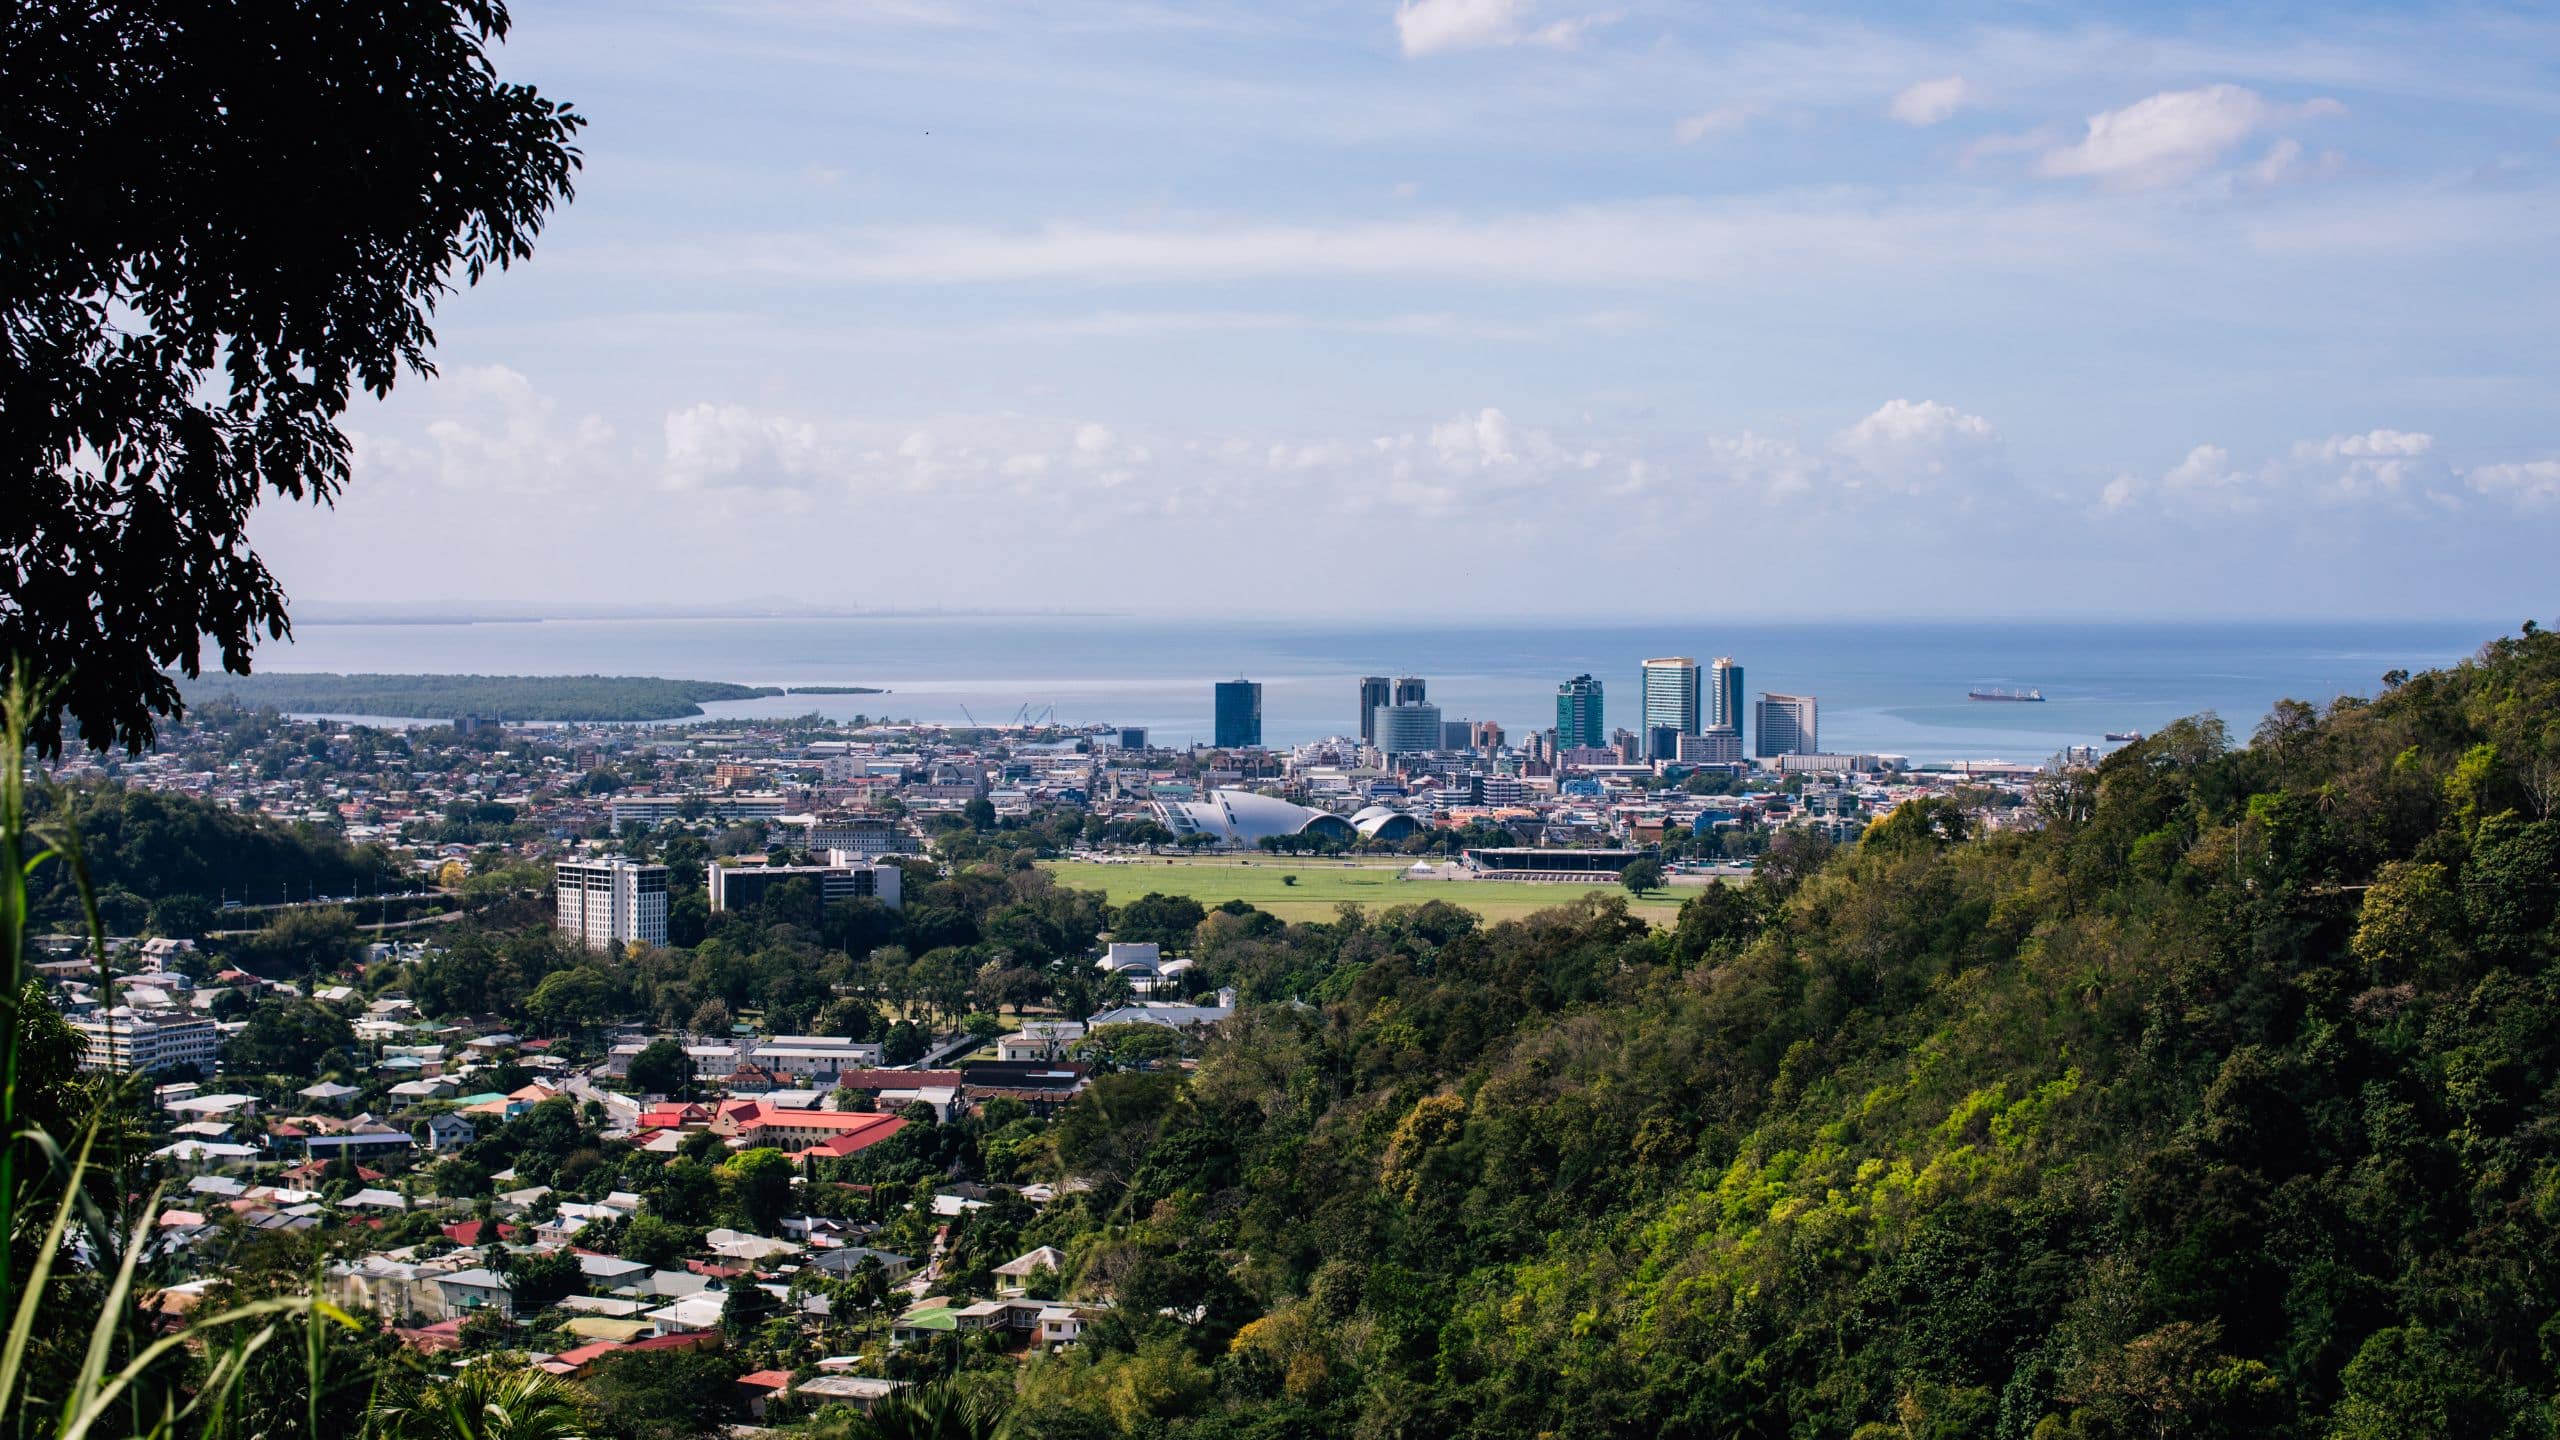 Hyatt Regency Trinidad City View